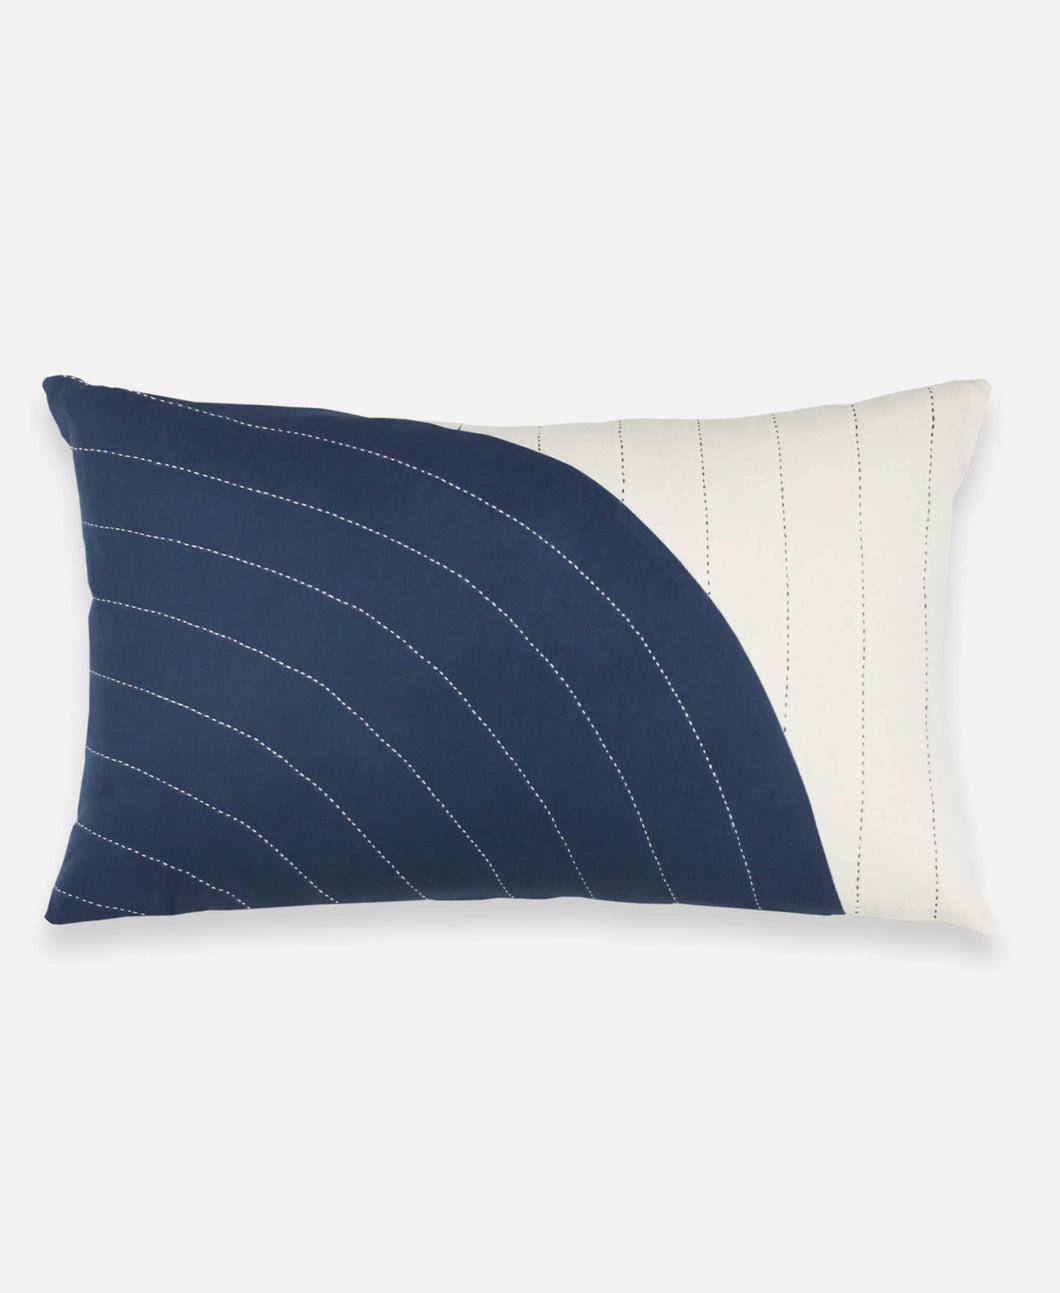 Navy Curve Lumbar Pillow Cover